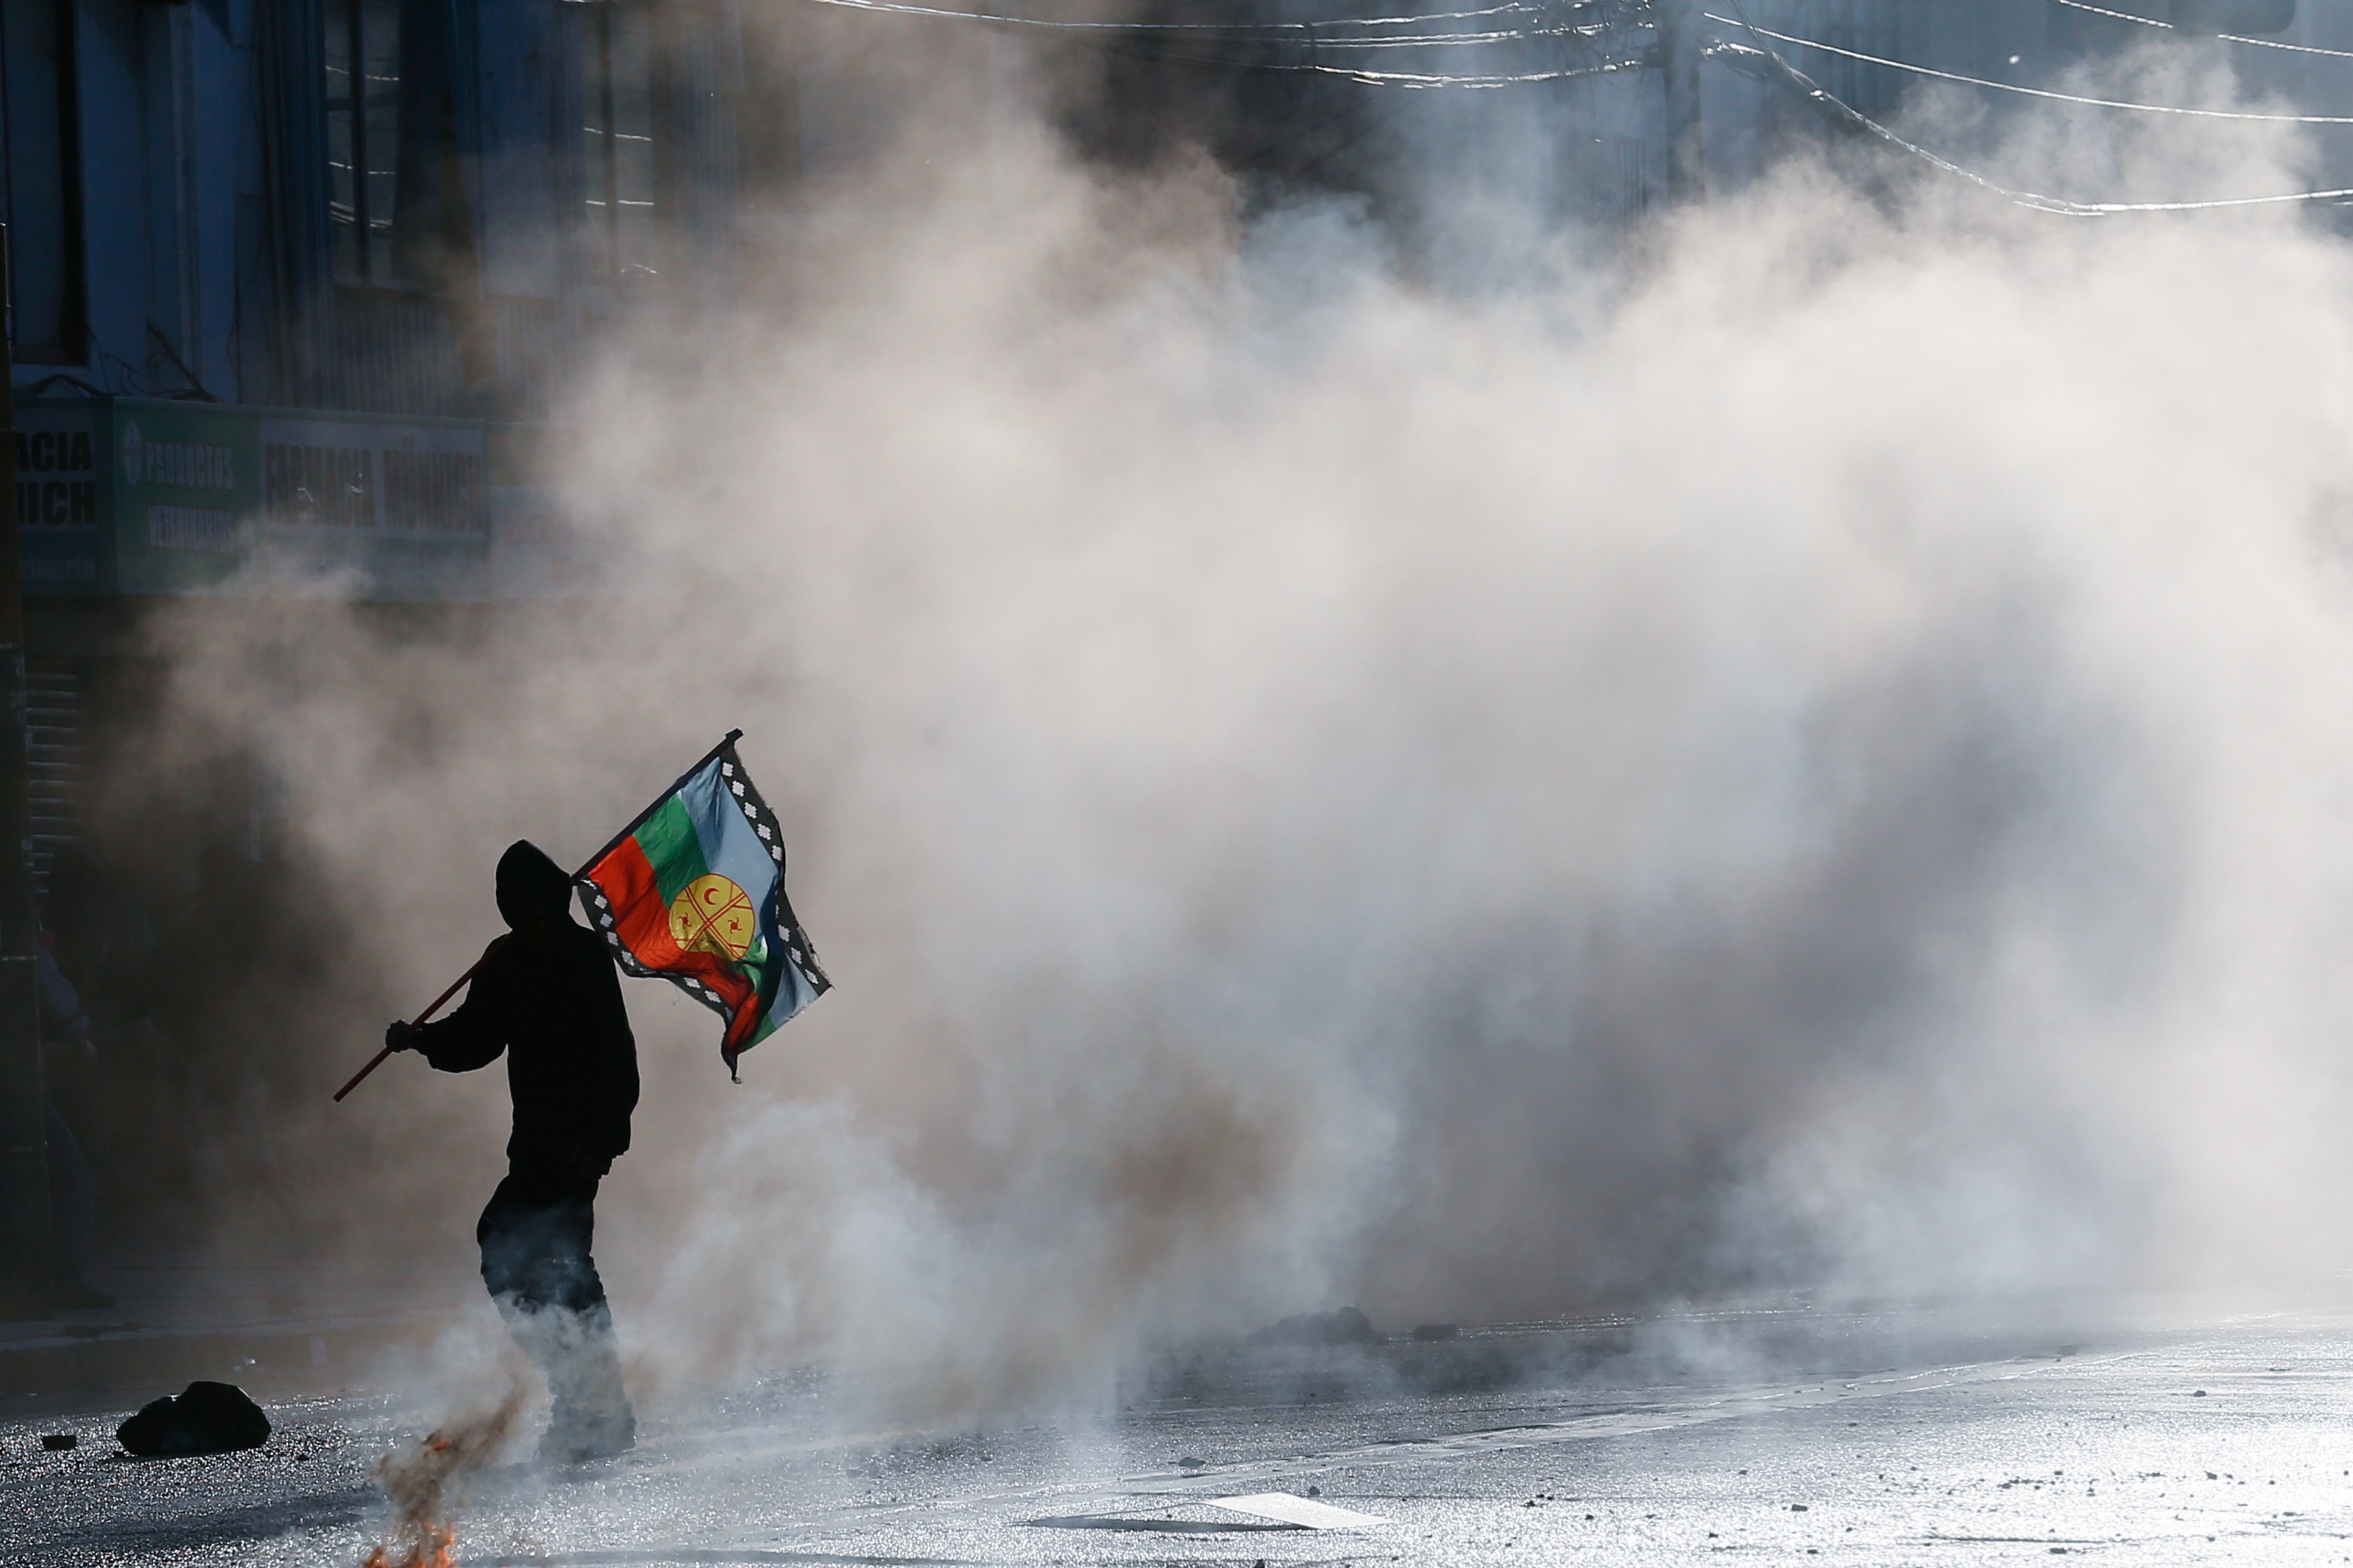 La intervención del gobierno argentino tiene lugar en momentos en que Chile vive un desafío por parte de los mapuches. Un manifestante enarbola la bandera mapuche durante una manifestación de protesta en Valparaíso (REUTERS/Rodrigo Garrido)